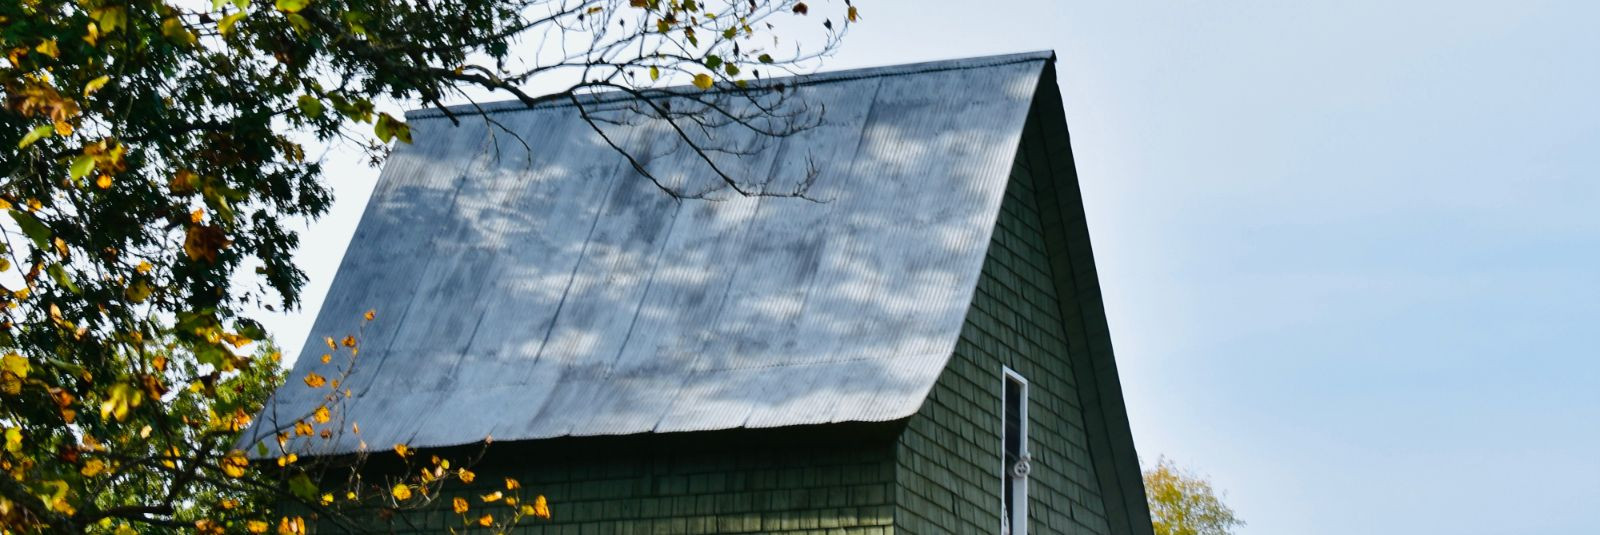 Kvaliteetne katuste ehitus on ülimalt oluline, sest katuse roll kodu või hoone jaoks on palju enamat kui lihtsalt vihma ja päikese eest kaitsmine. Katus peab va